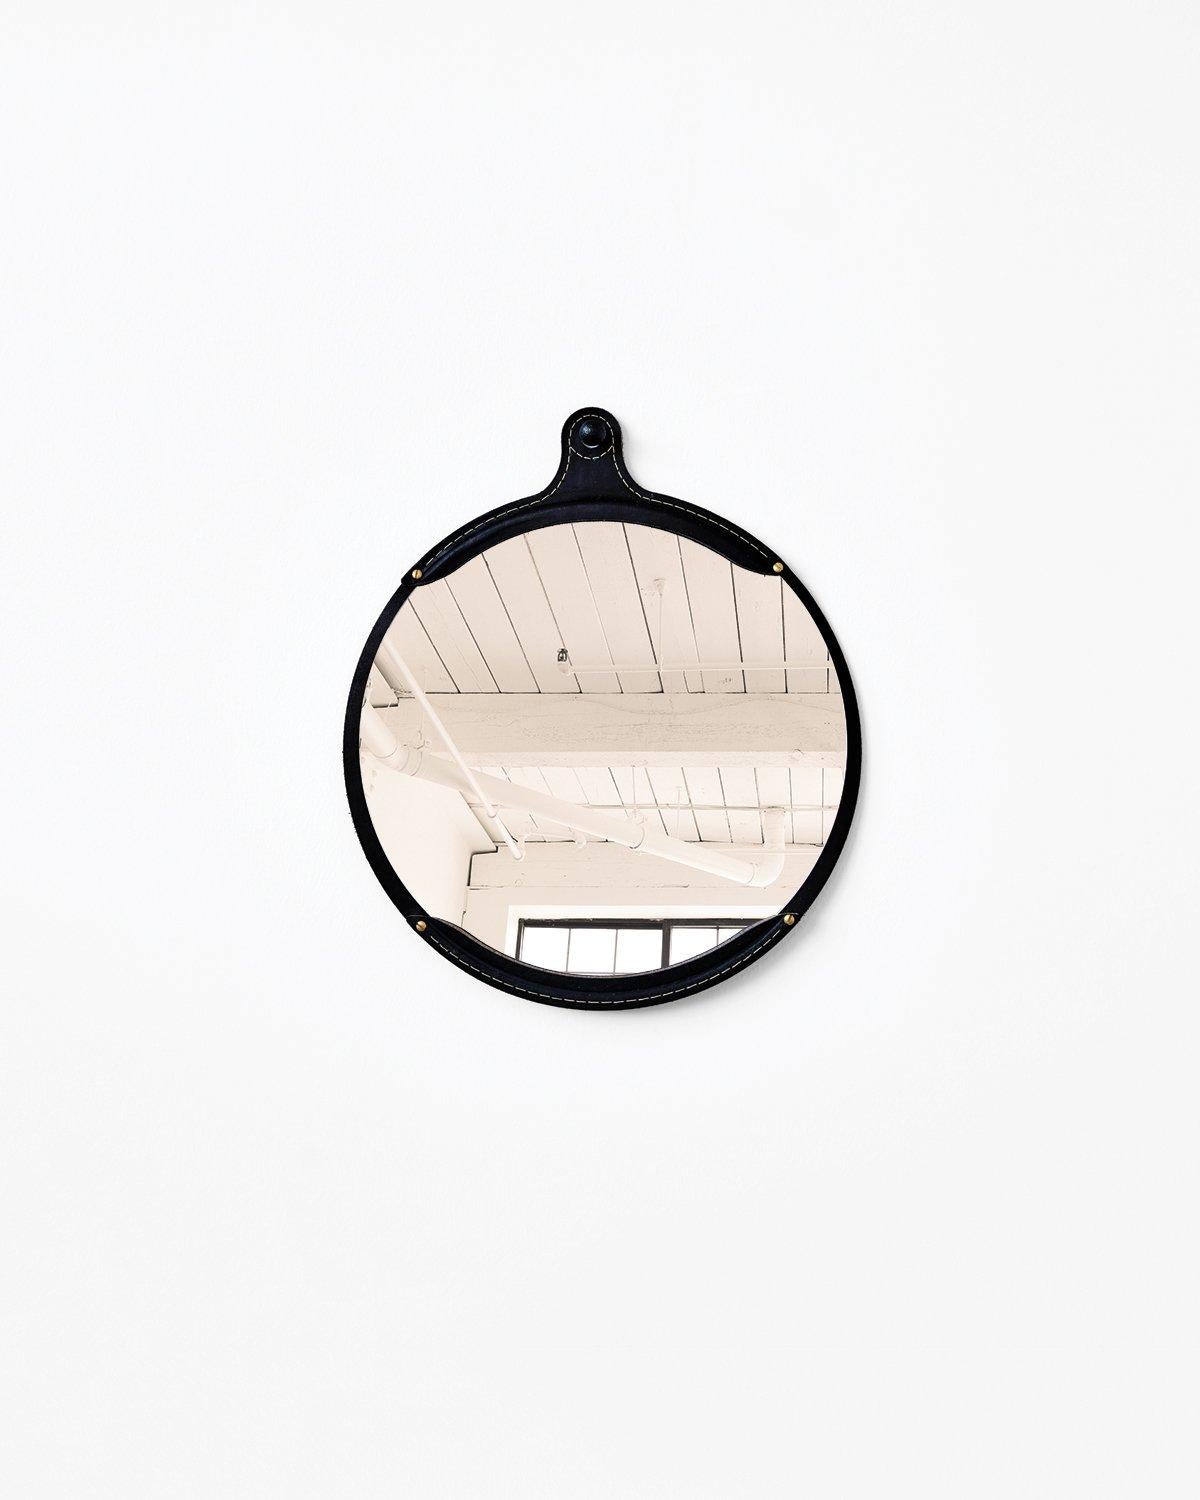 Der breite ovale Fairmount-Spiegel ist ein handgenähter Lederspiegel mit einem Rahmen aus natürlichem, pflanzlich gegerbtem Leder, das mit der Zeit in der Farbe variiert und leicht nachdunkelt. Der Spiegel sitzt im Inneren des Rahmens wie eine